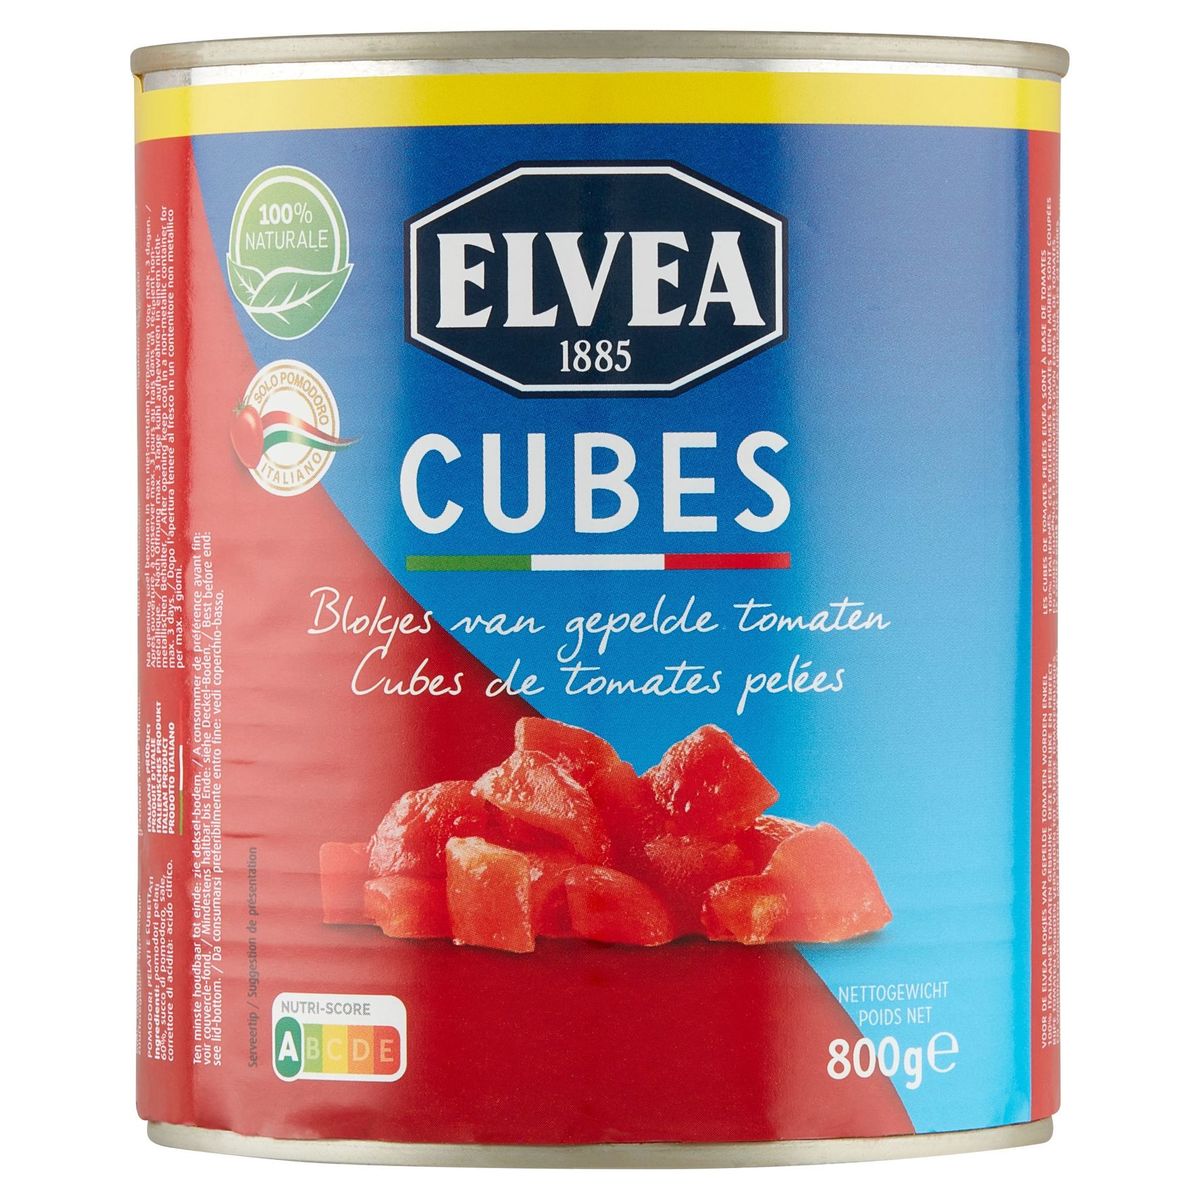 Elvea Cubes Blokjes van Gepelde Tomaten 800 g